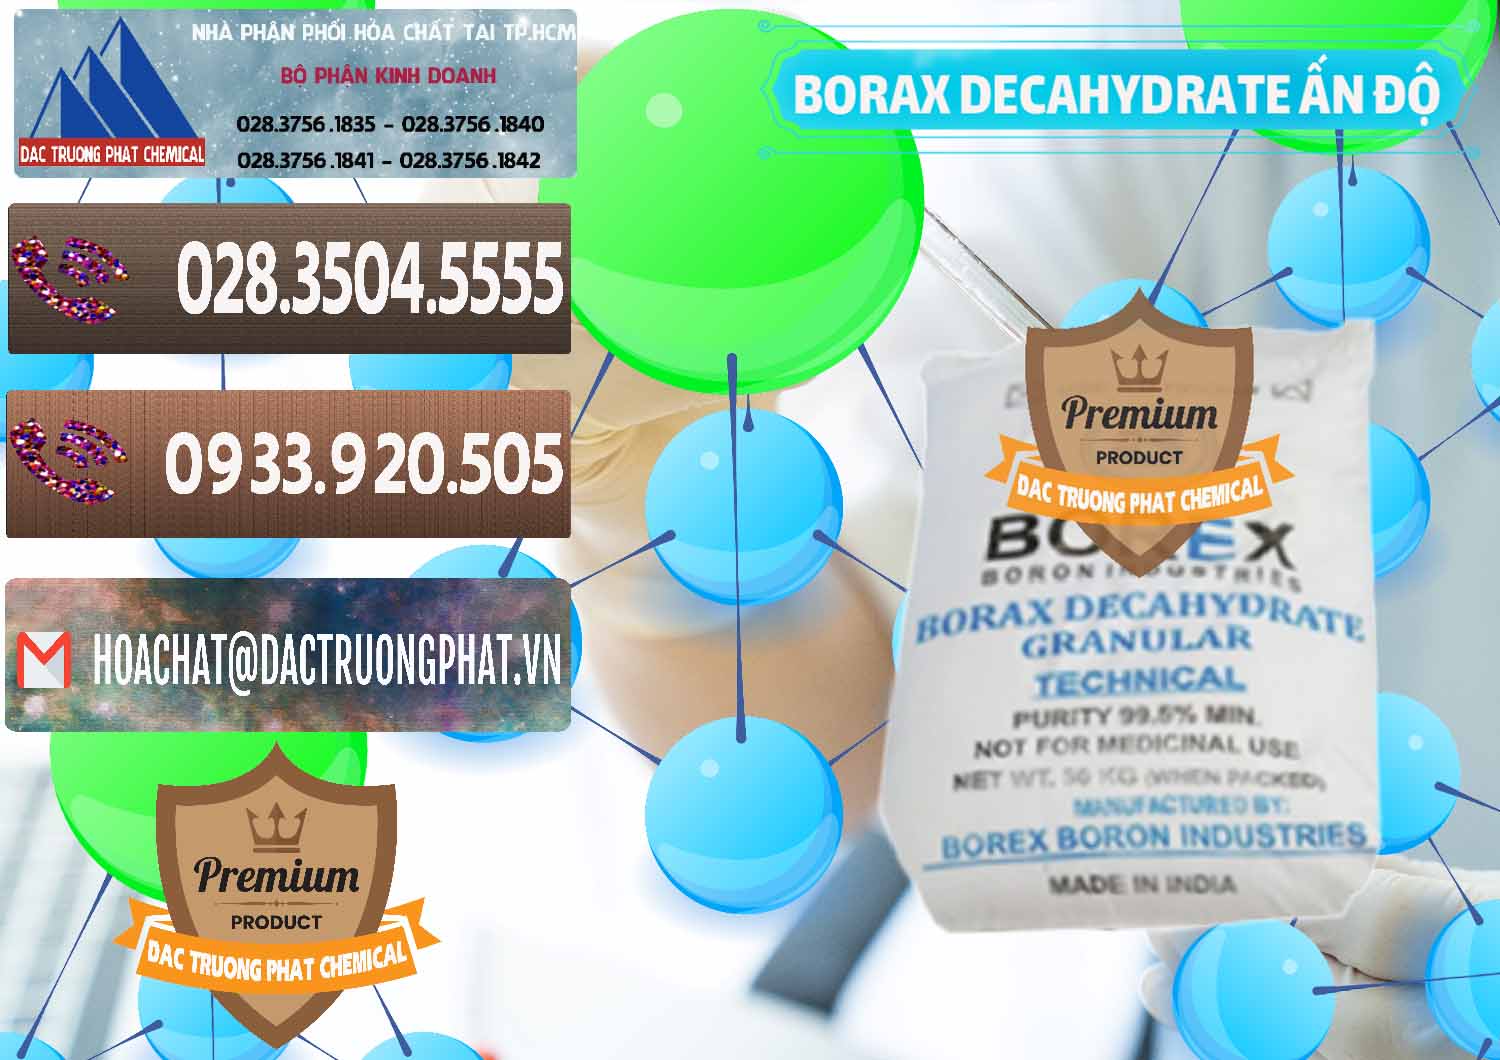 Cty cung cấp _ bán Borax Decahydrate Ấn Độ India - 0449 - Đơn vị chuyên kinh doanh & cung cấp hóa chất tại TP.HCM - hoachatviet.net